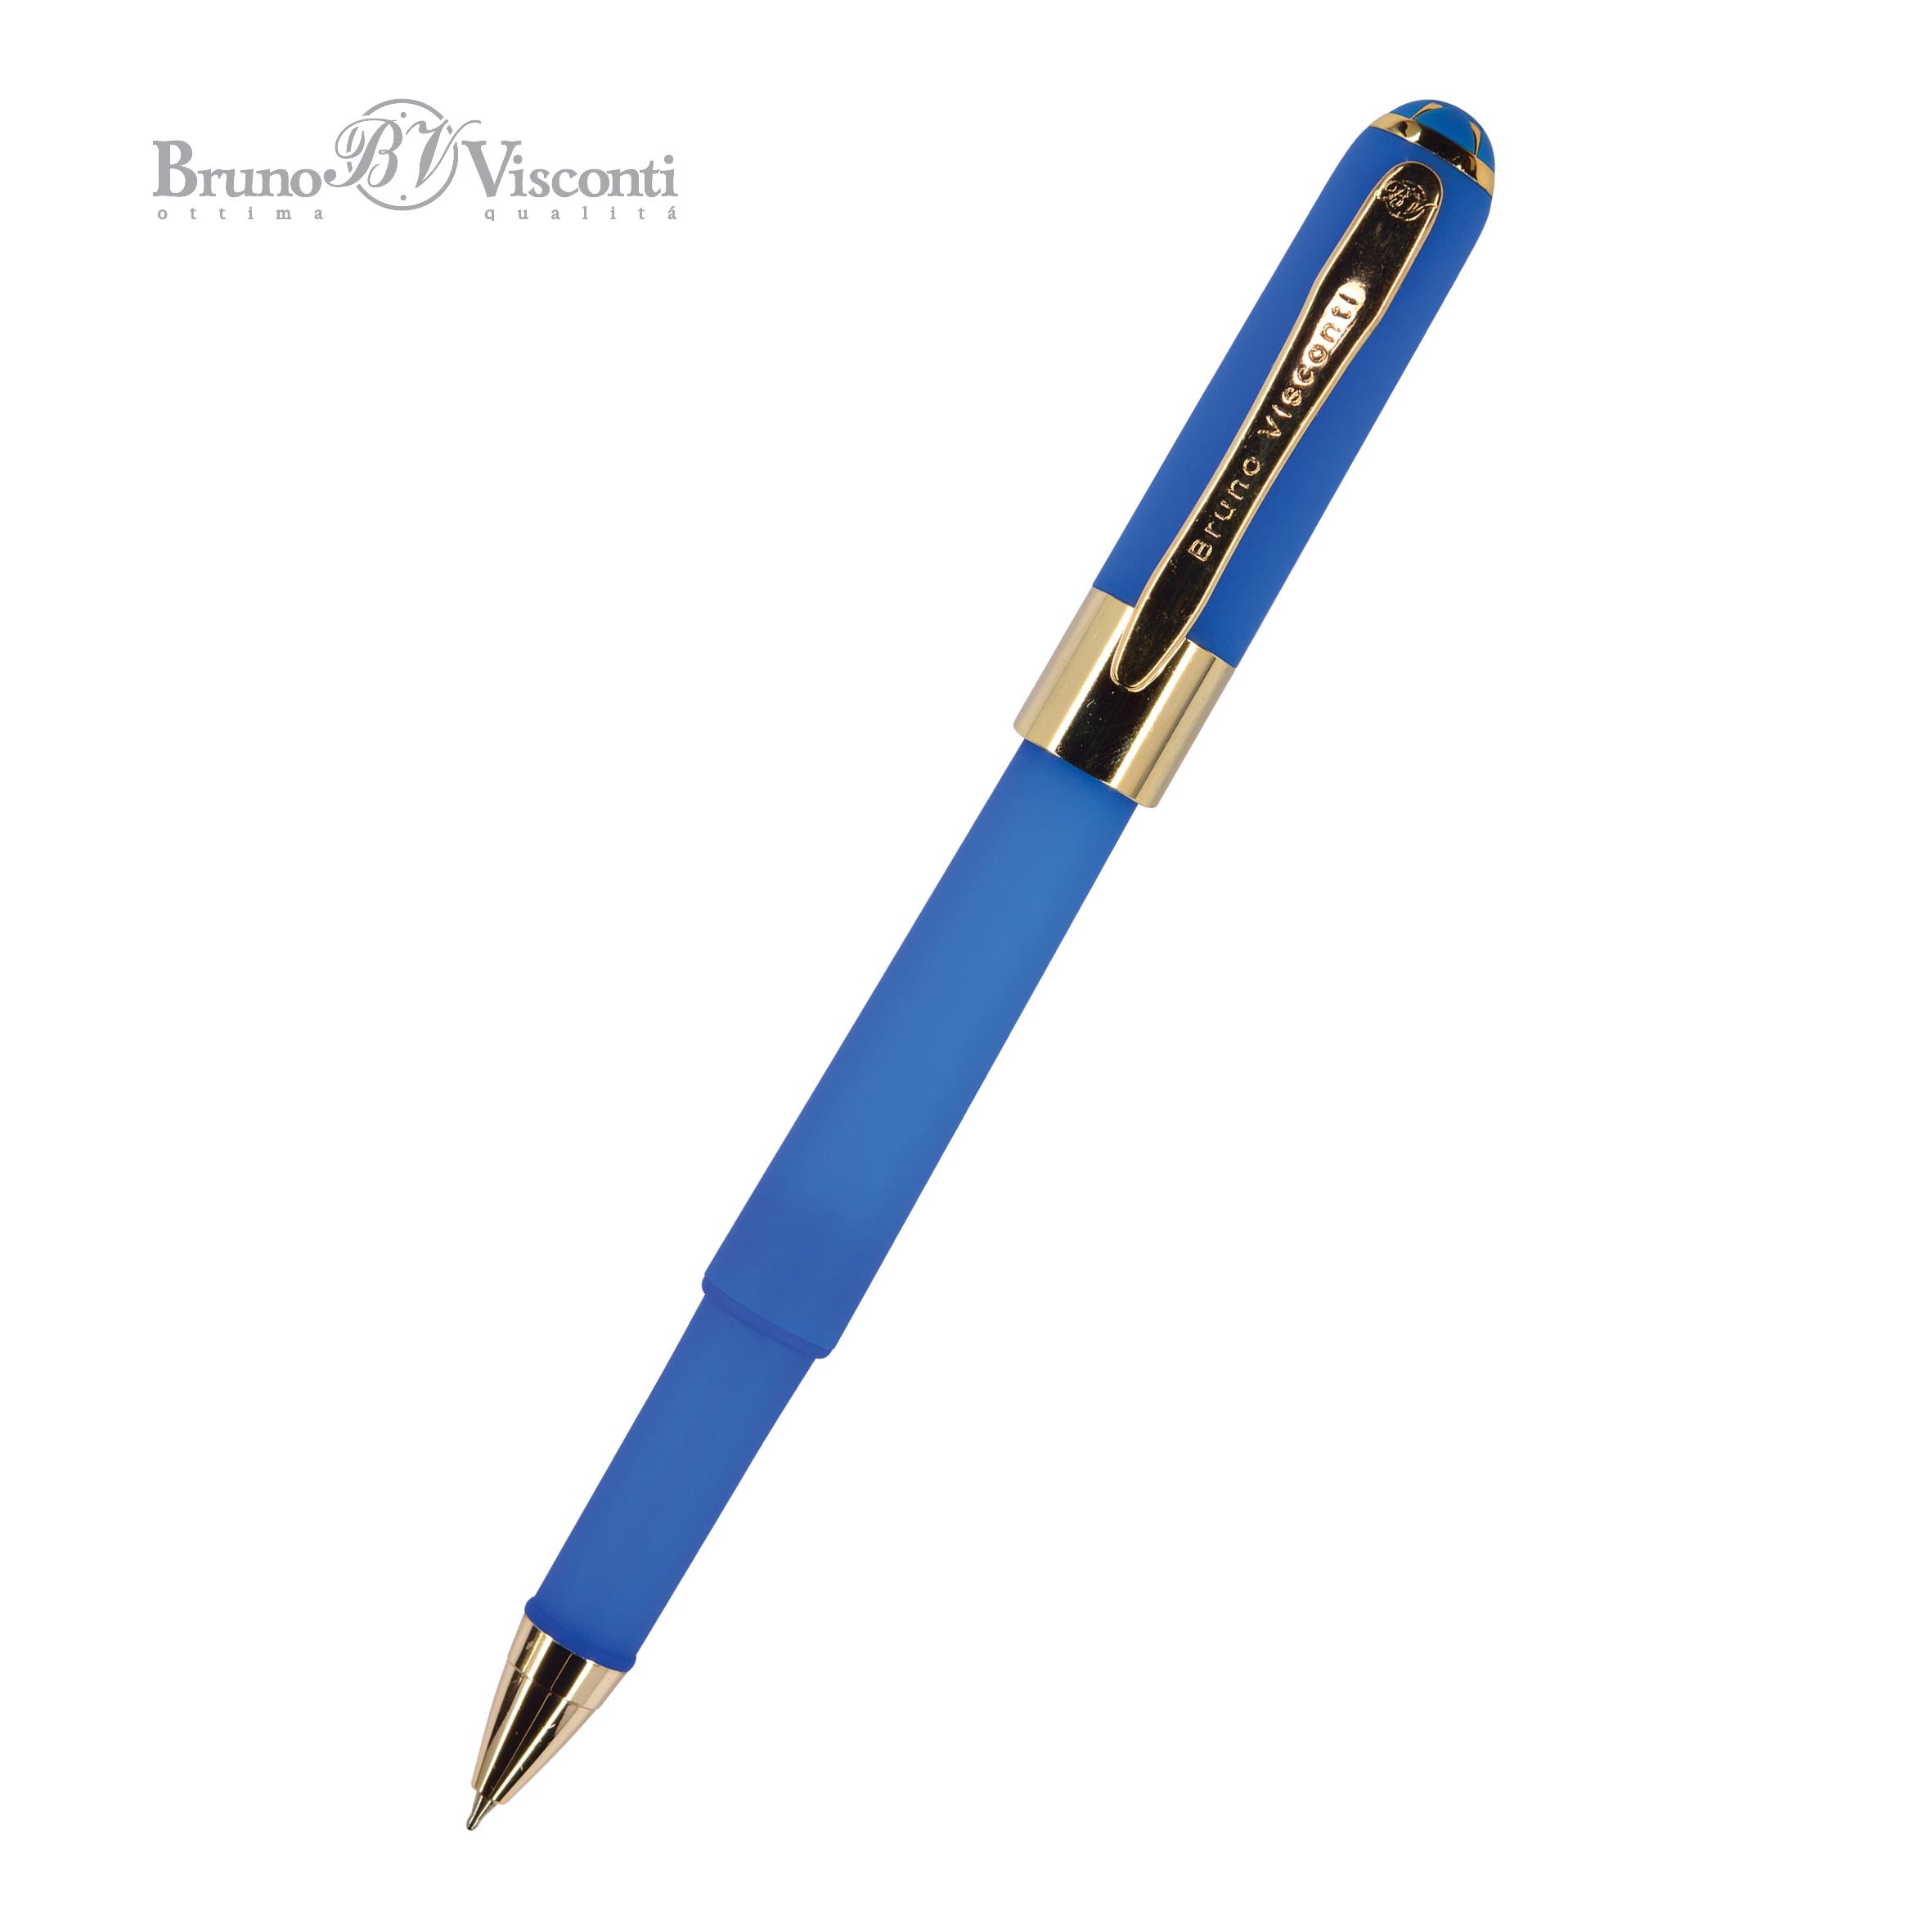 Ручка подар шар BV Monaco синяя 0,5мм синий корпус